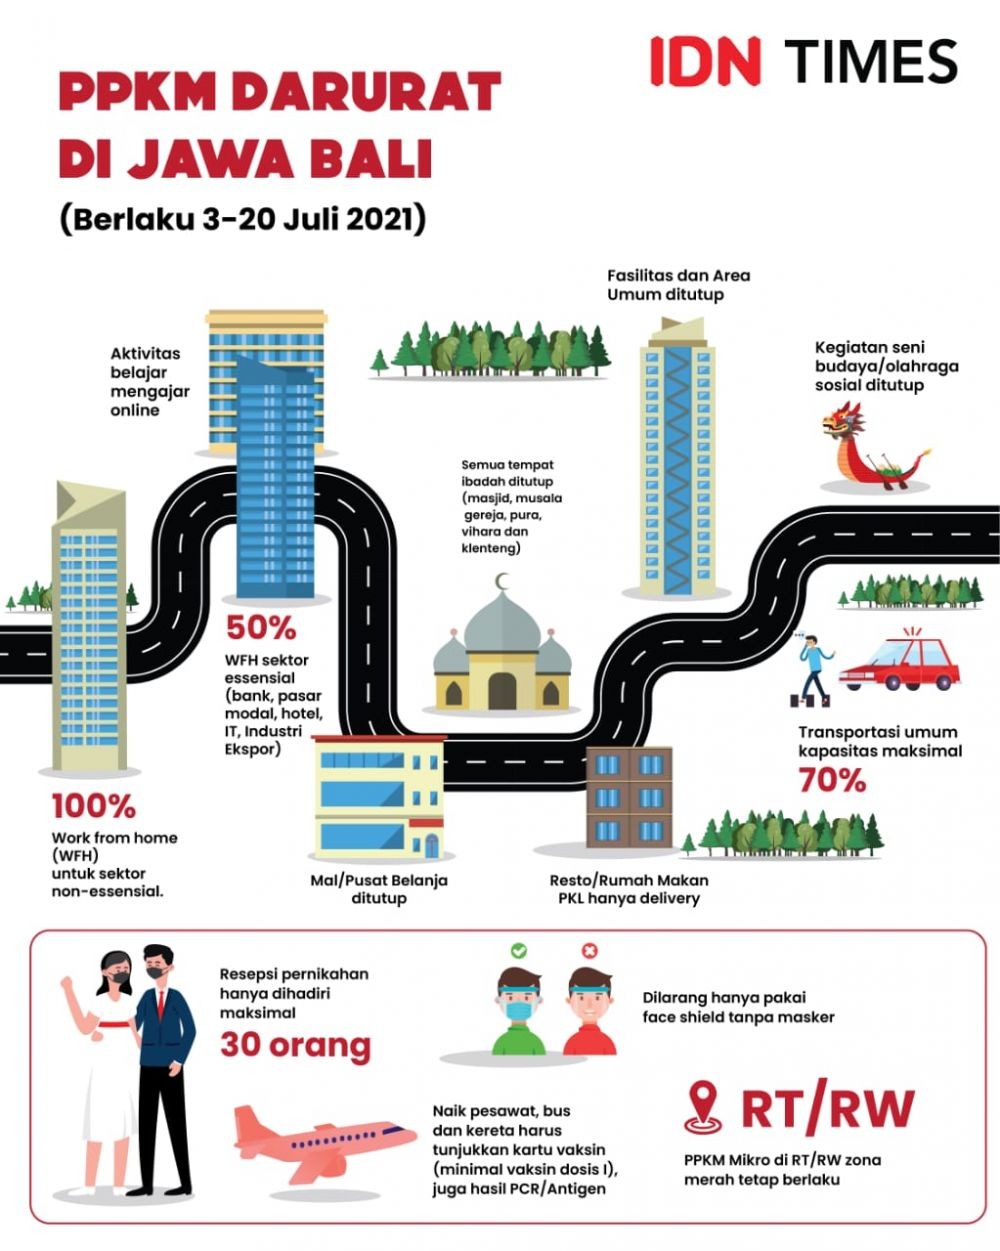 DPRD Kota Tangerang Nilai PPKM Darurat Enggak Berjalan Maksimal 